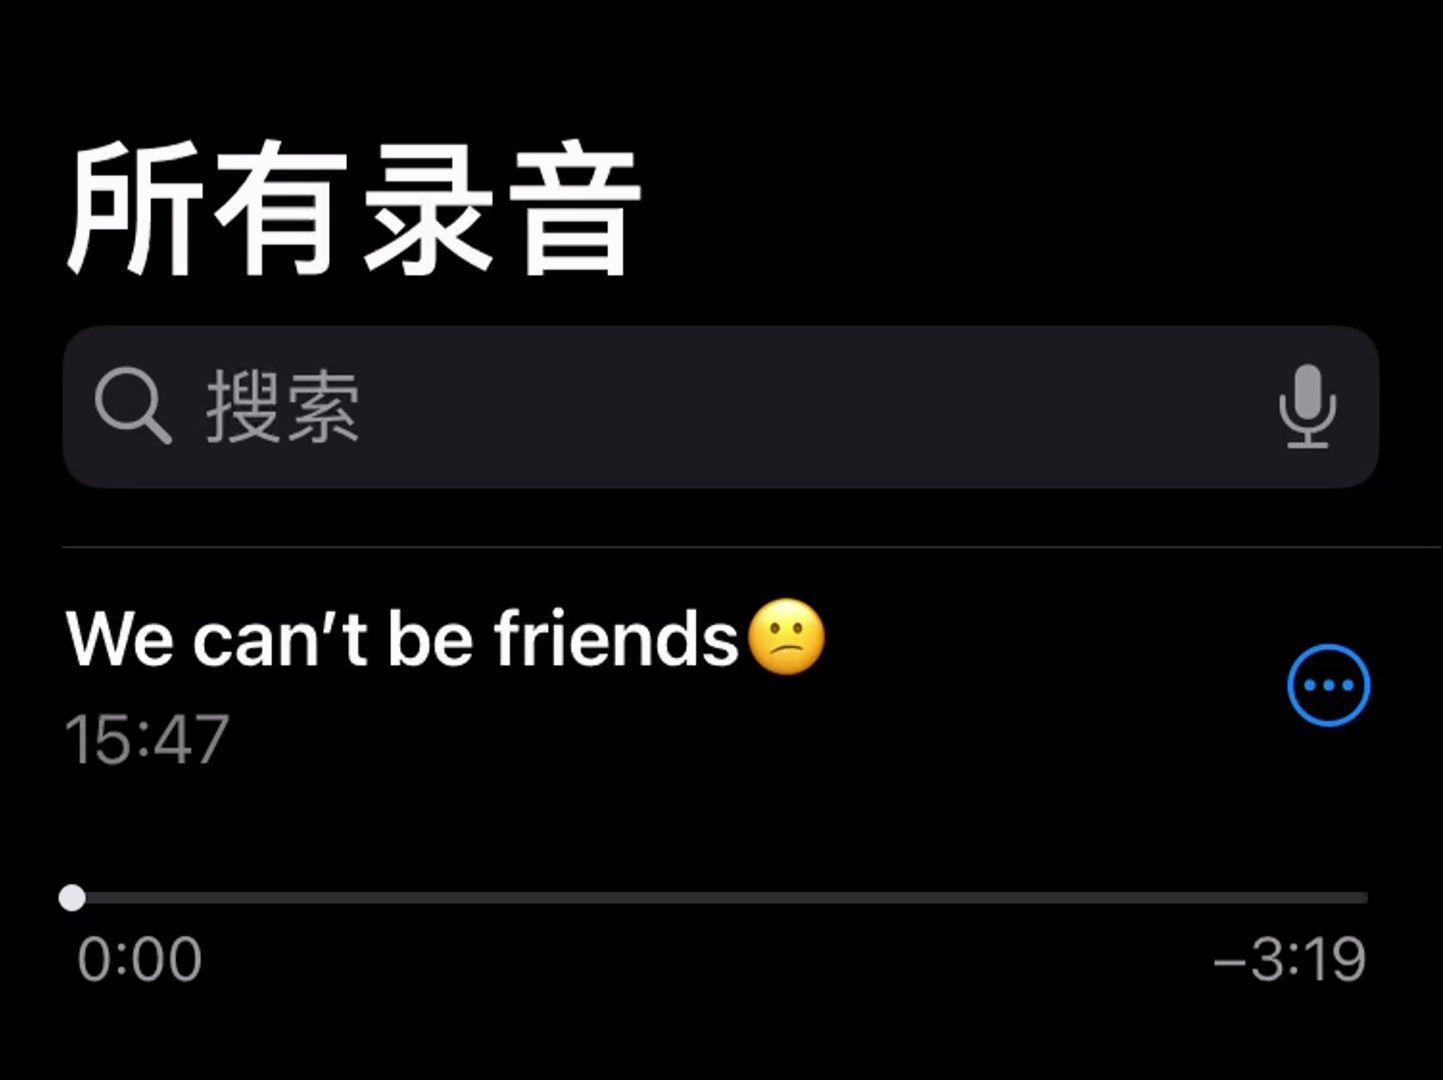 【无情lollipop】We can't be friends | I'd rather be friends